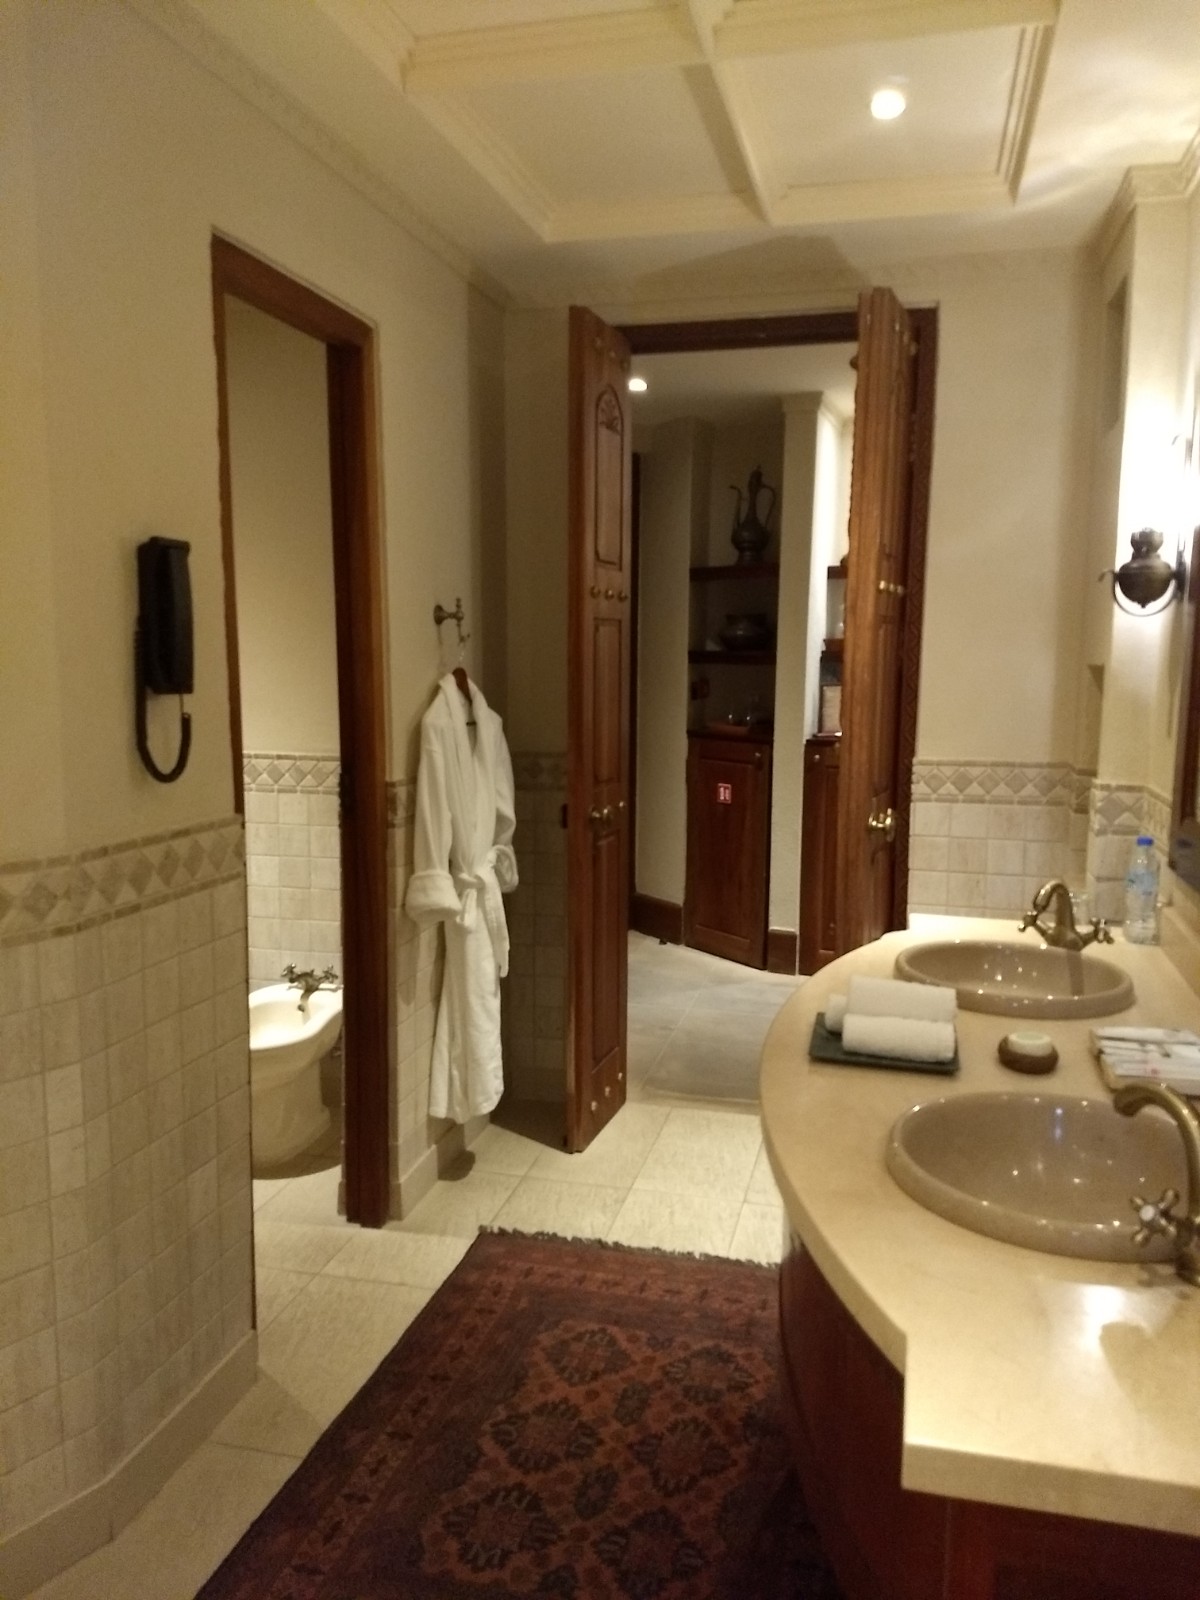 Al_bathroom.jpg